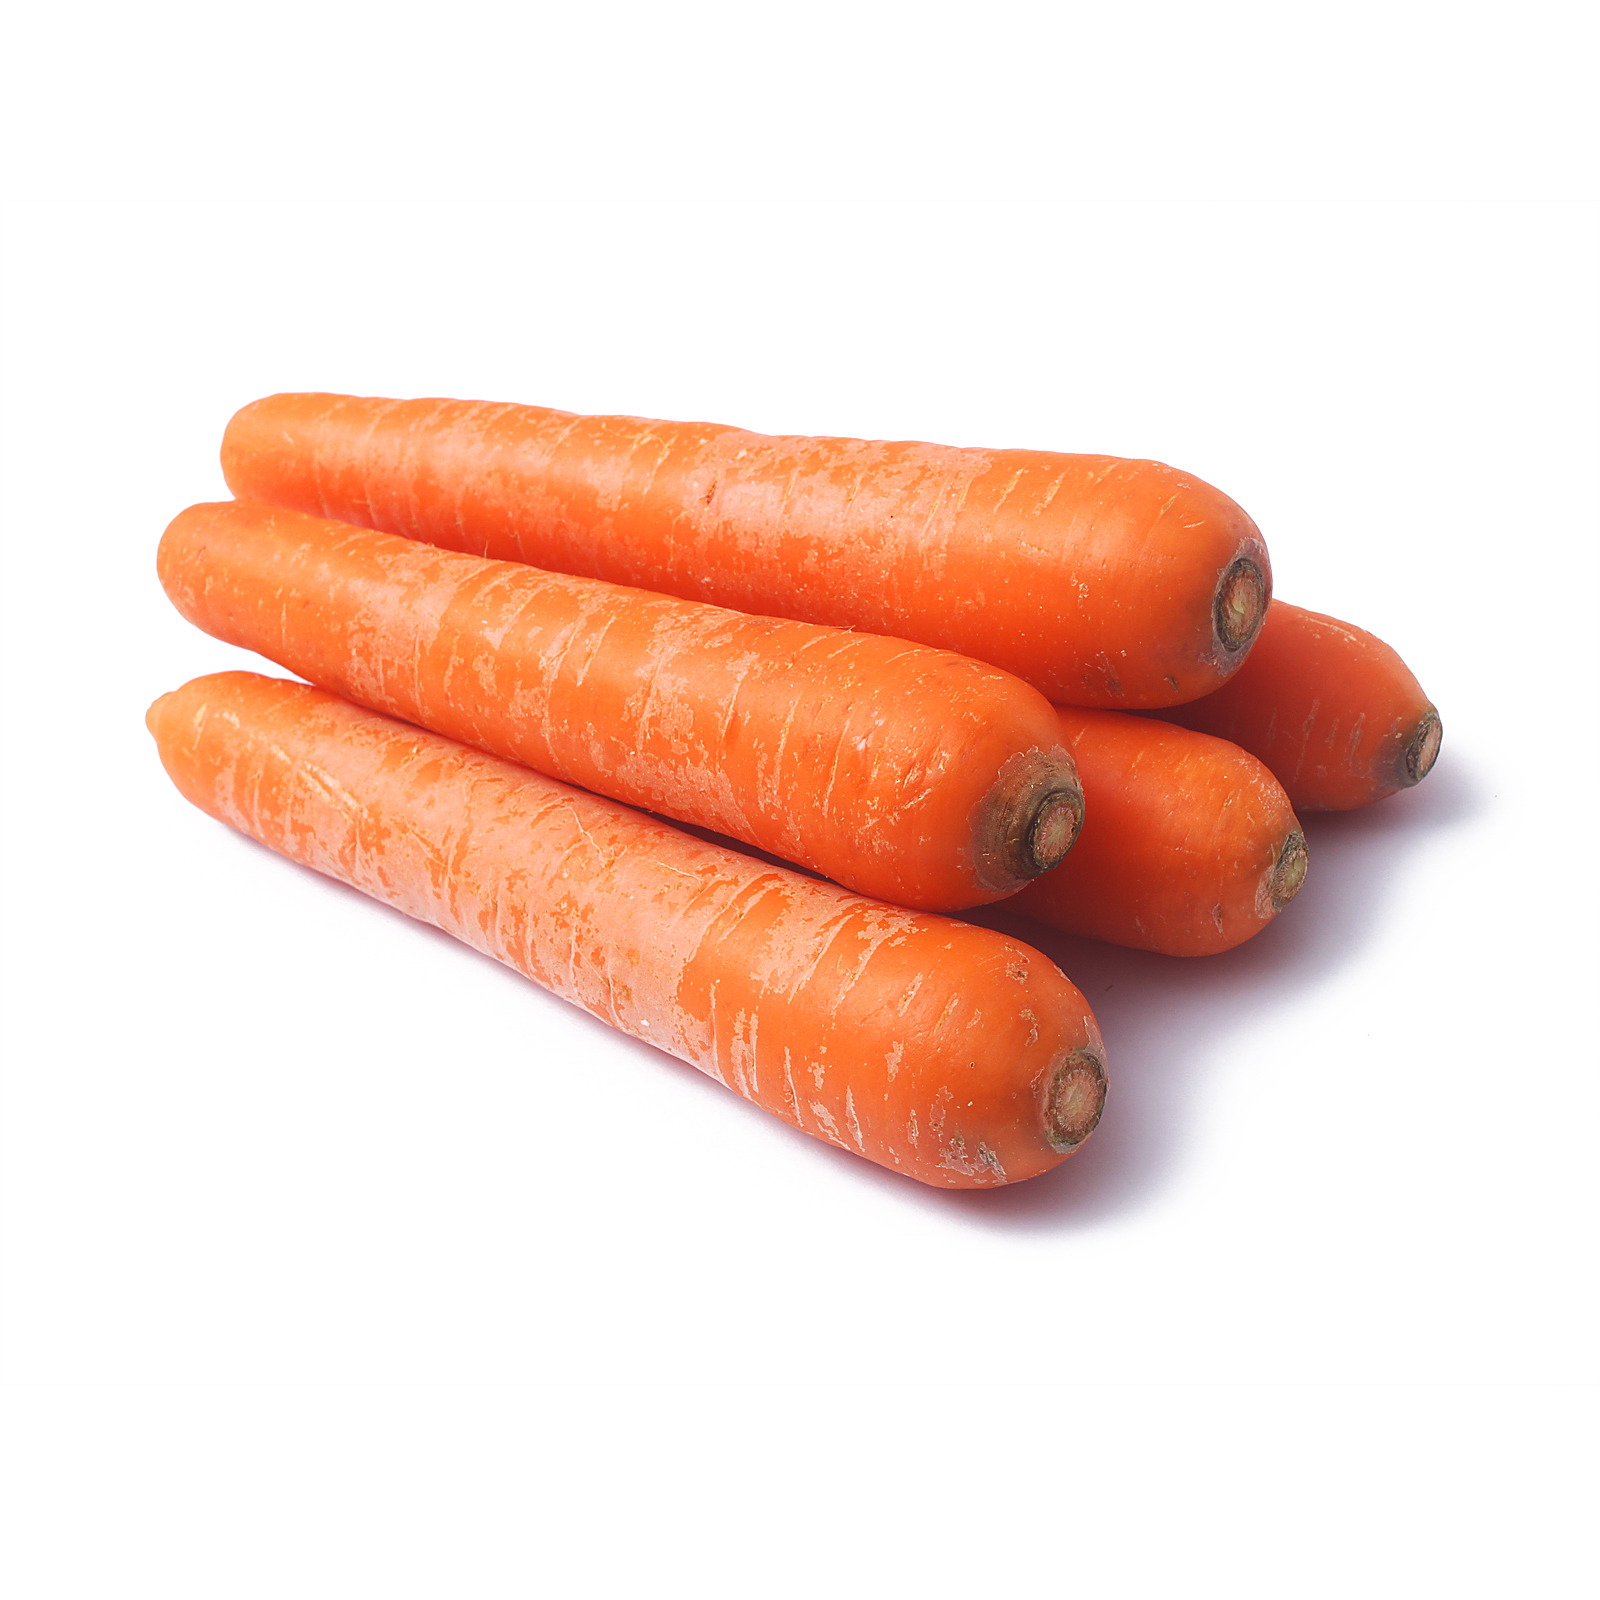 Carrots 1kg - from RedMart